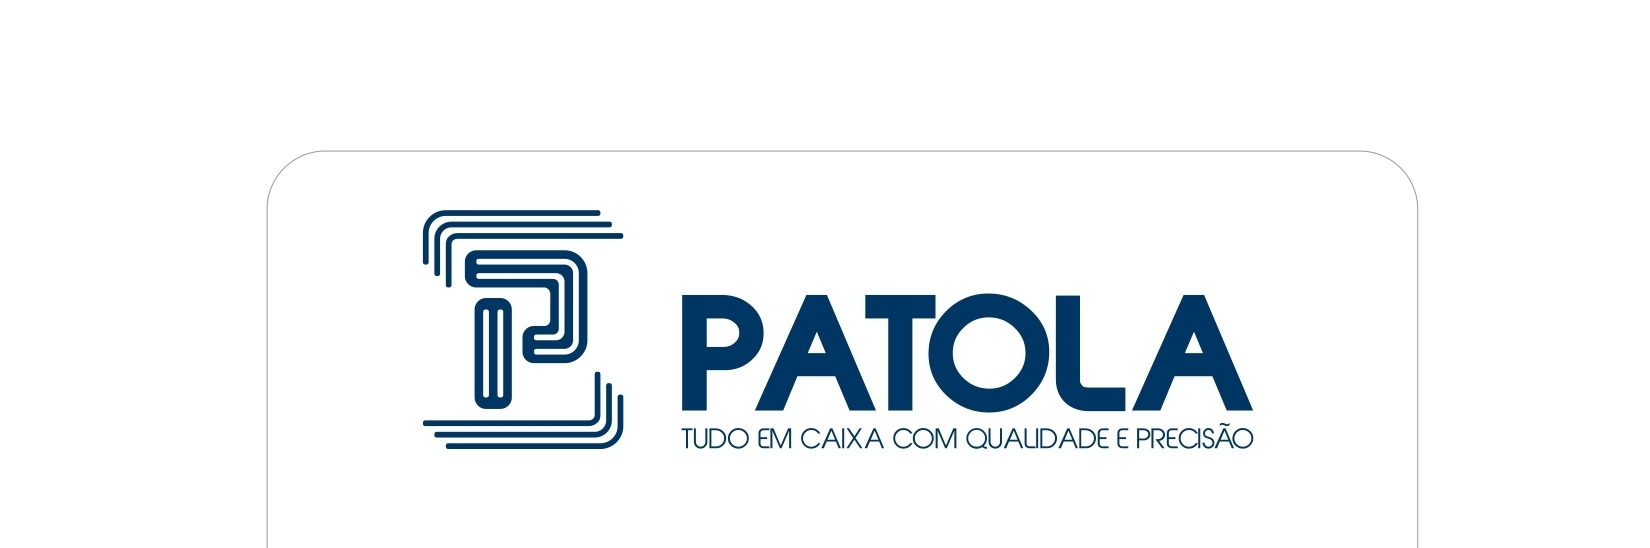 Patola.cdr - Logo Patola (1)_page-0001